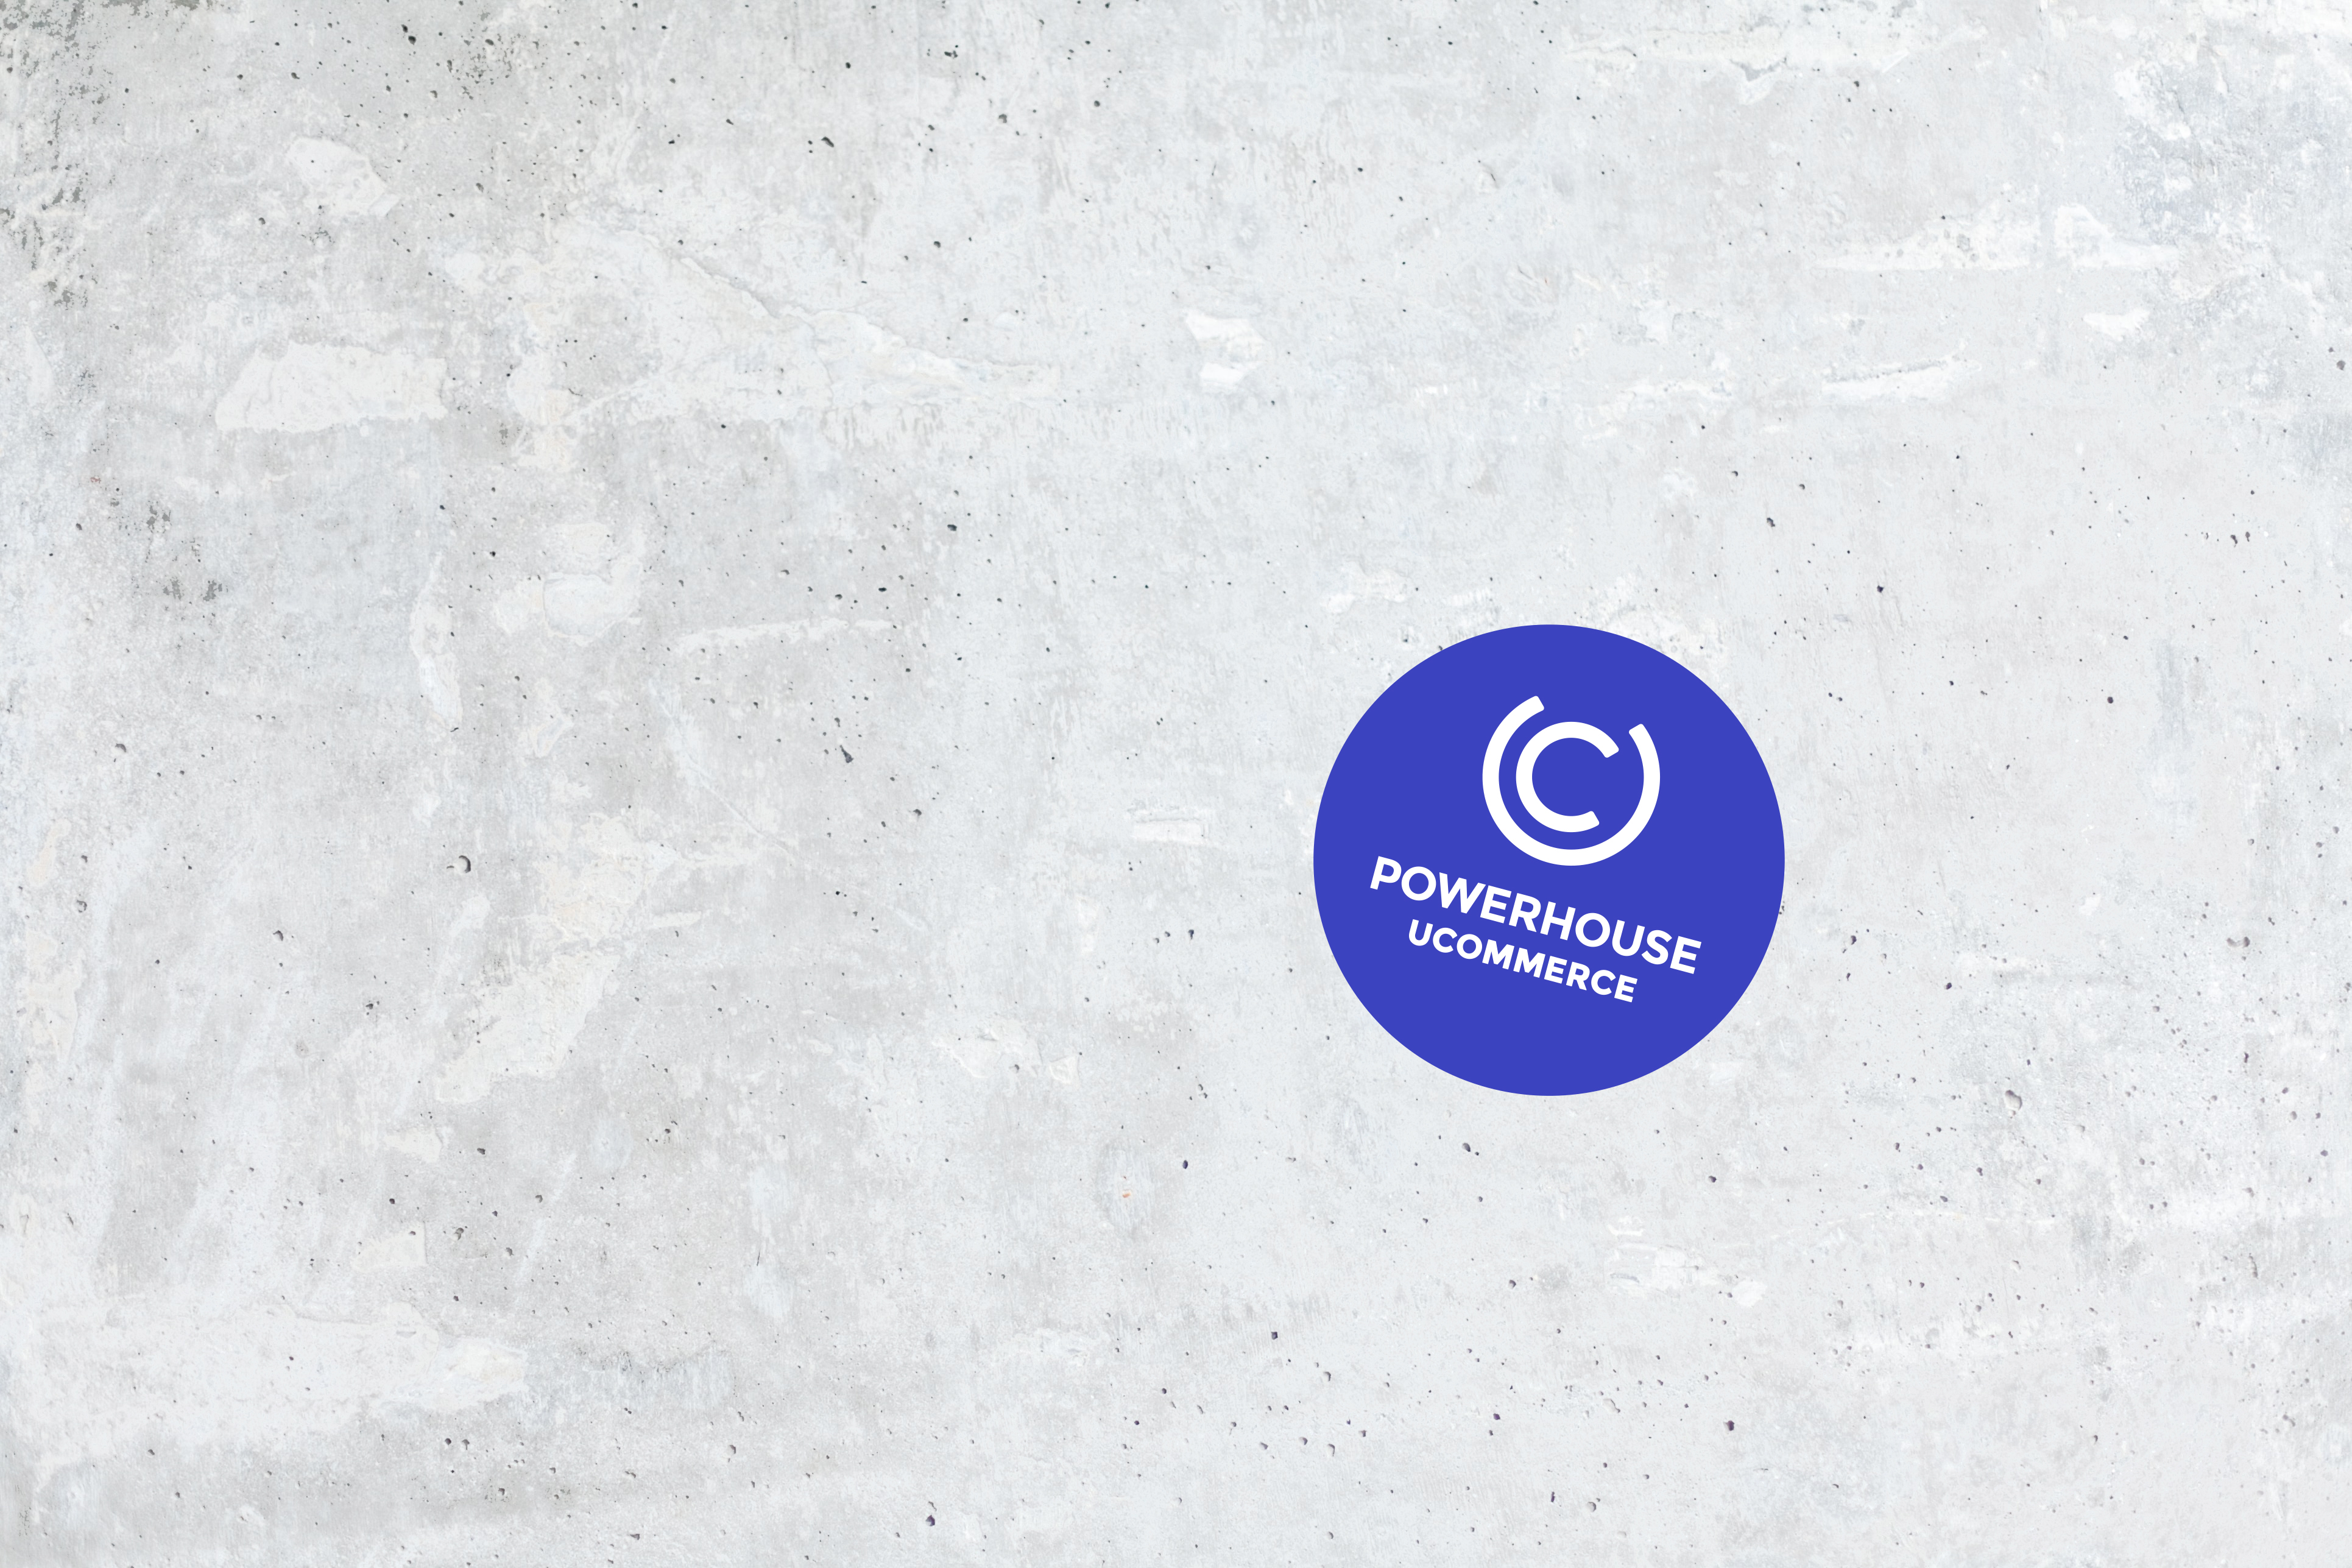 Ucommerce-Powerhouse-logo-cement